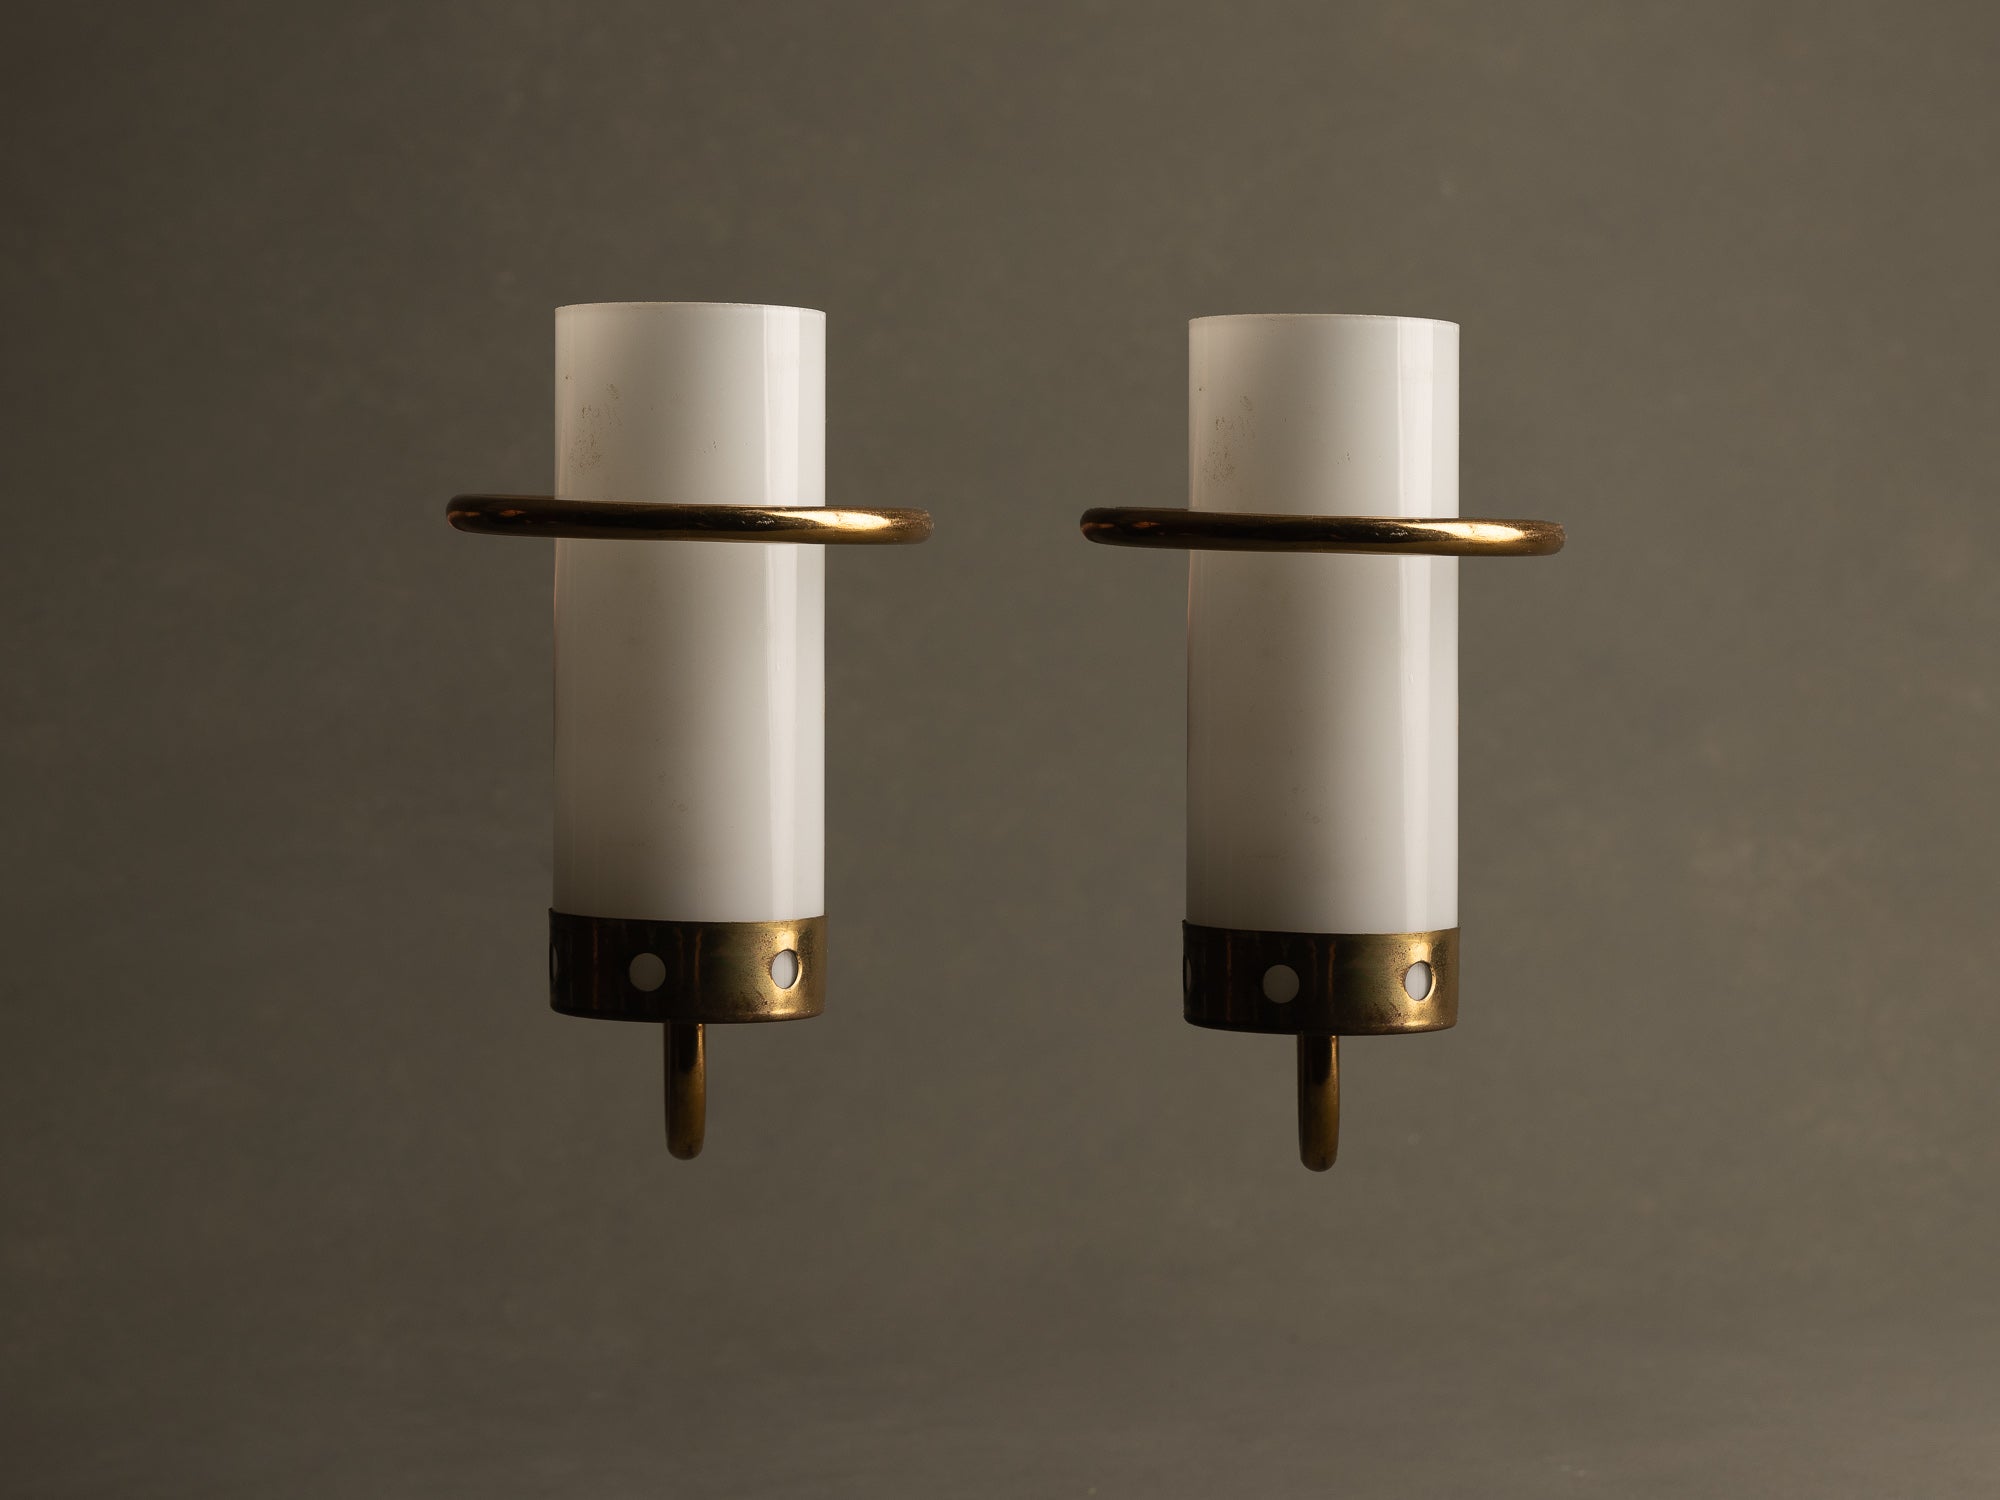 Paire d’appliques modernistes en opaline et laiton perforé, France (vers 1955-60)..Pair of modernist brass and glass wall lights sconces, France (circa 1955-60)